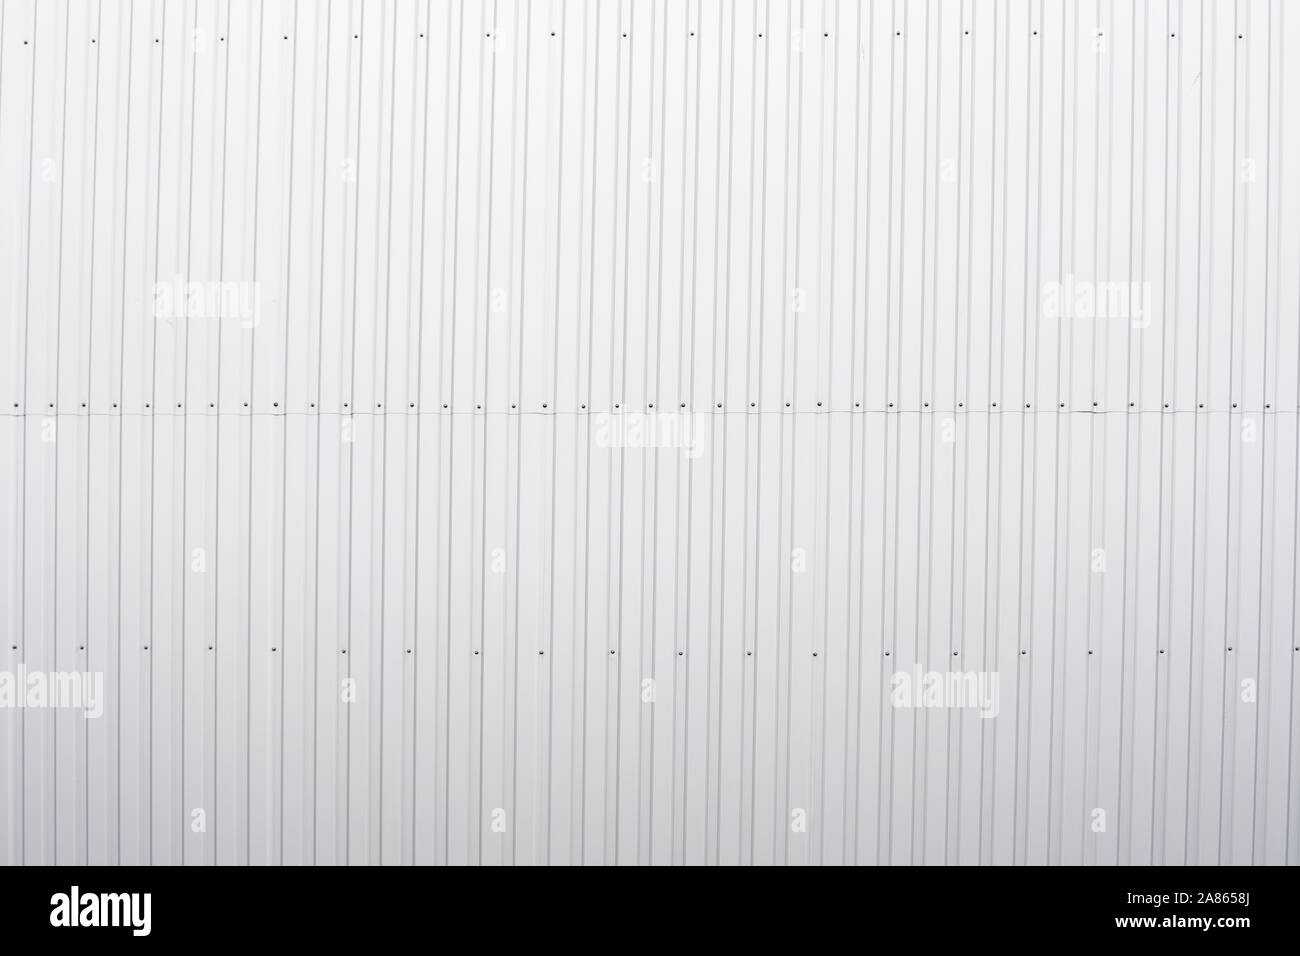 Feuille de métal ondulé blanc surface texture du mur. Fond en acier galvaniser. Banque D'Images